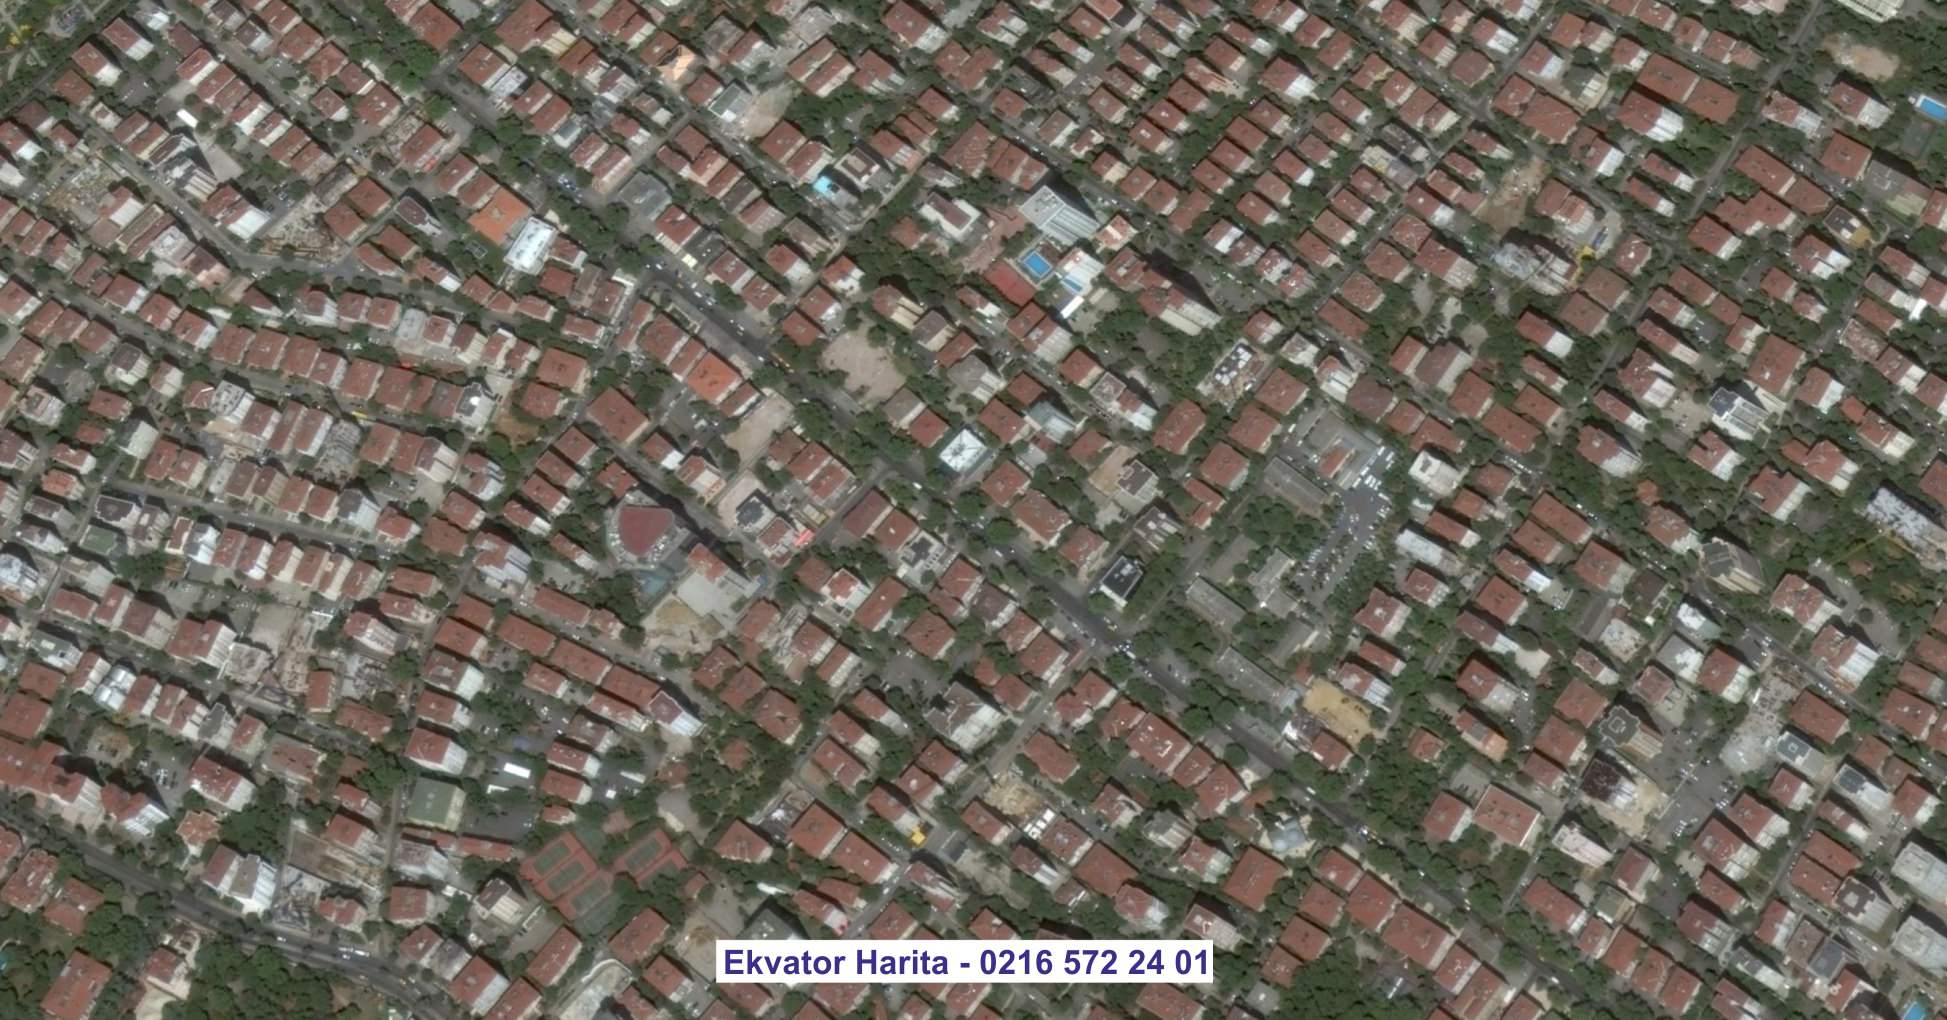 Adapazarı Uydu Görüntüsü Örnek Fotoğrafı